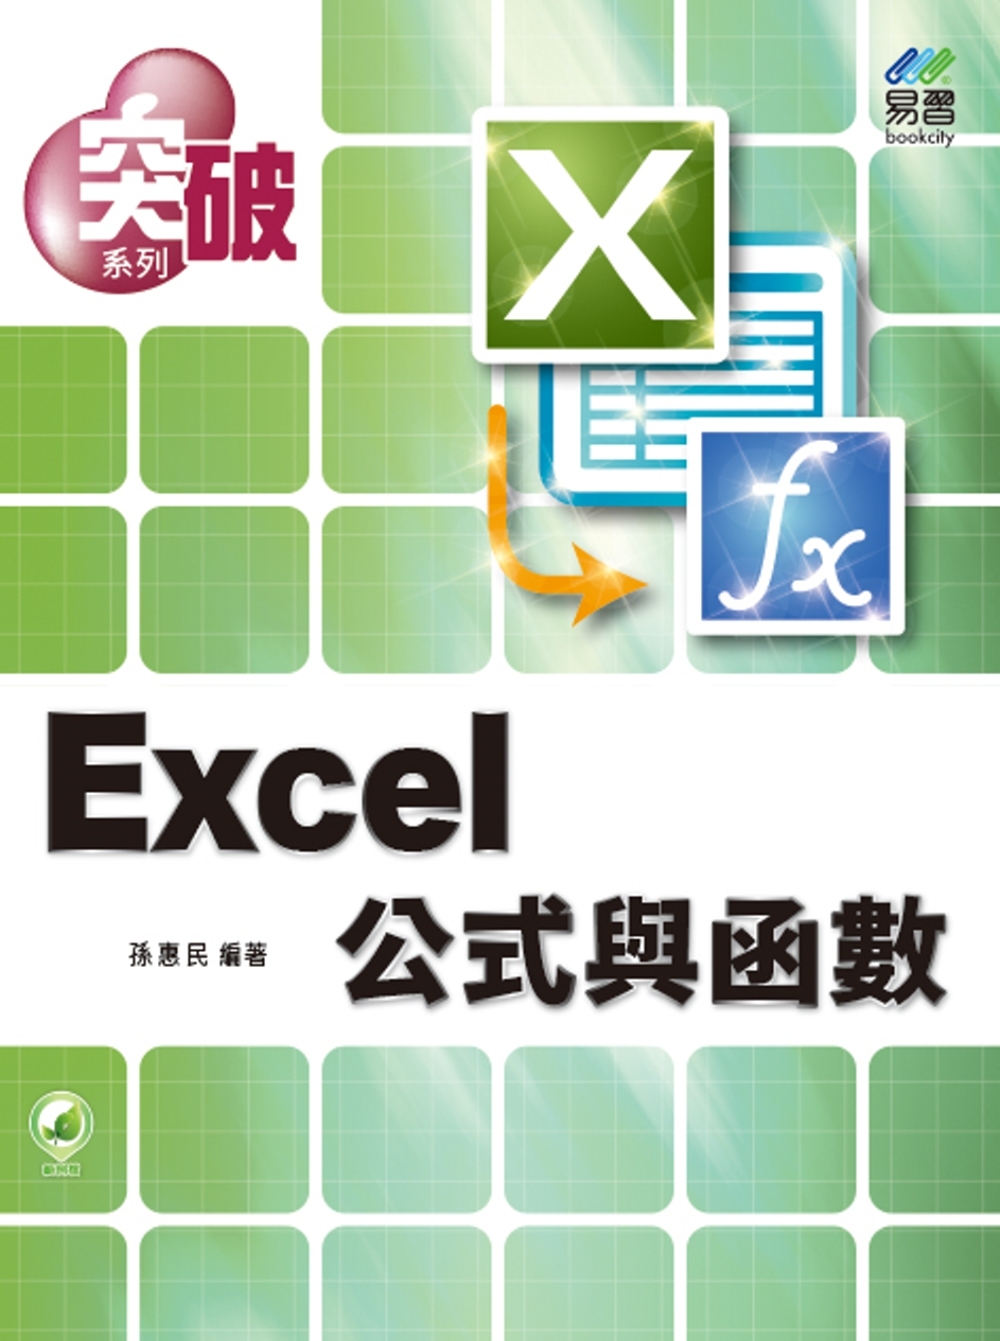 突破 Excel 公式與函數